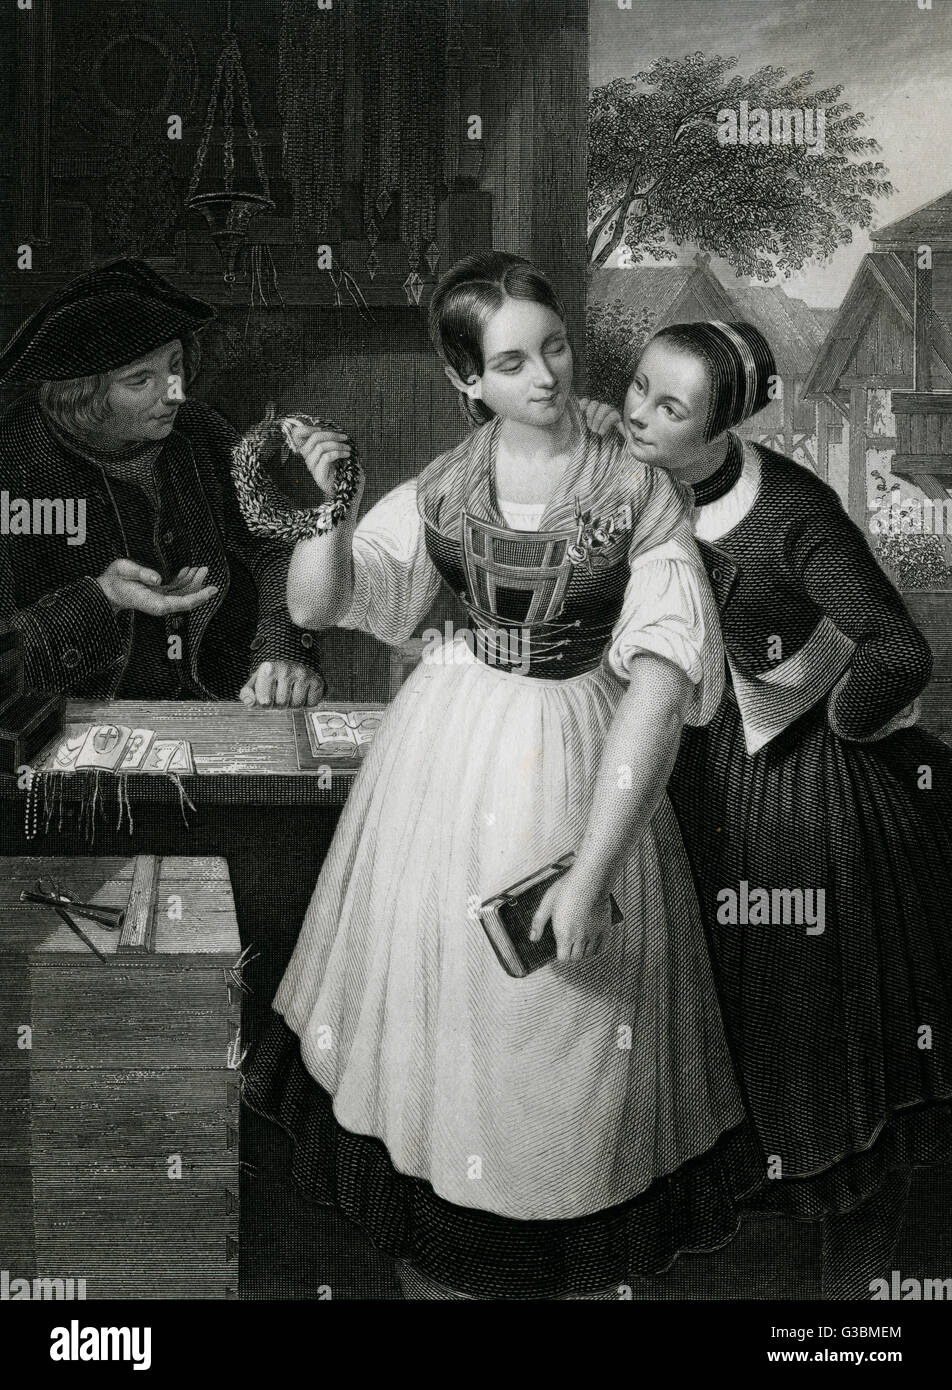 Eine Mädchen vom Lande kauft einen Brautkranz.        Datum: Anfang des 19. Jahrhunderts Stockfoto